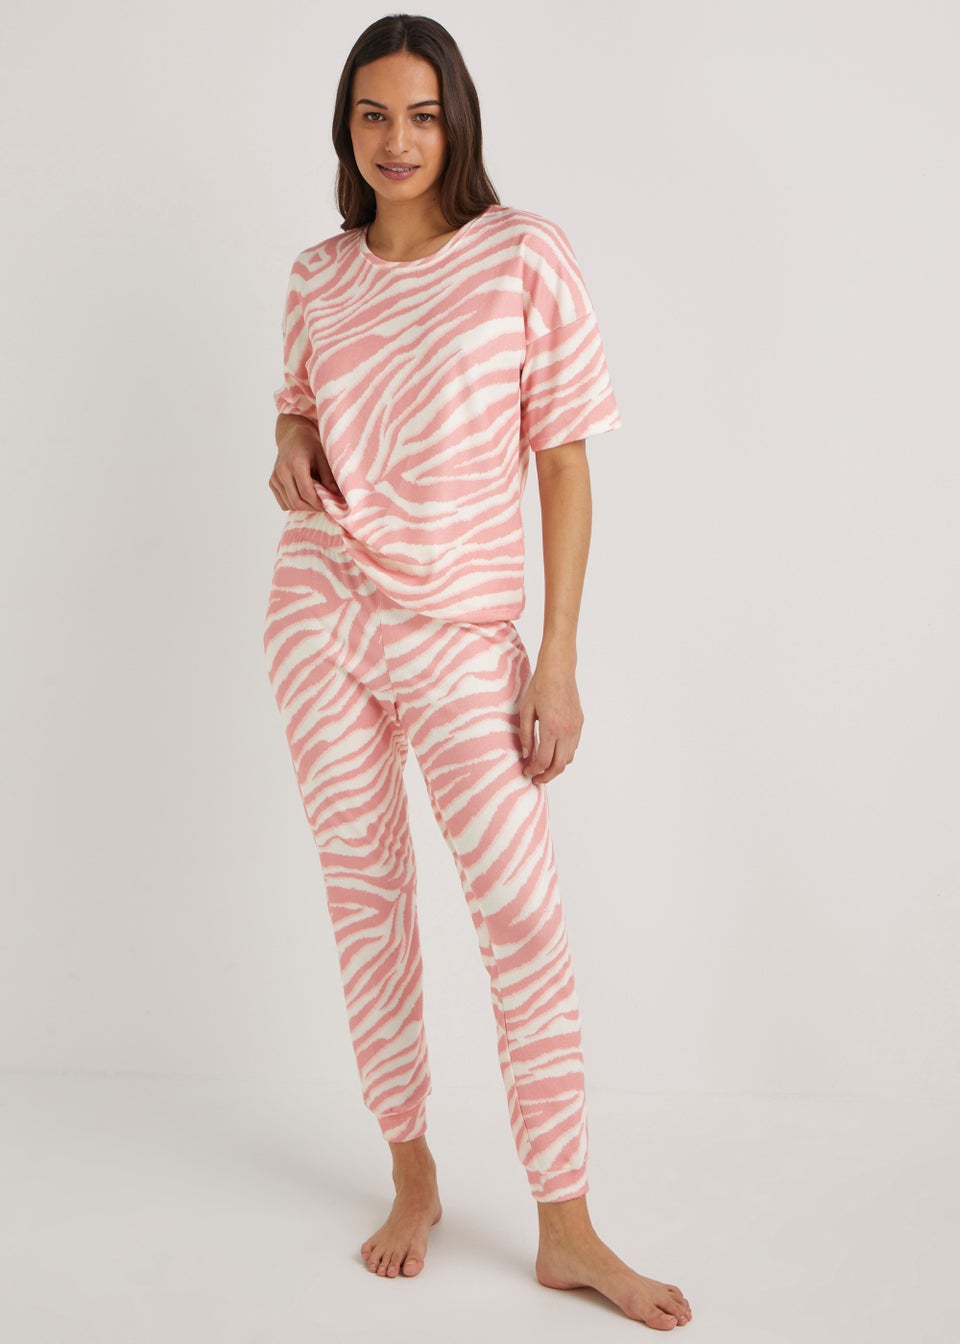 Pink Zebra Print Pyjama Set